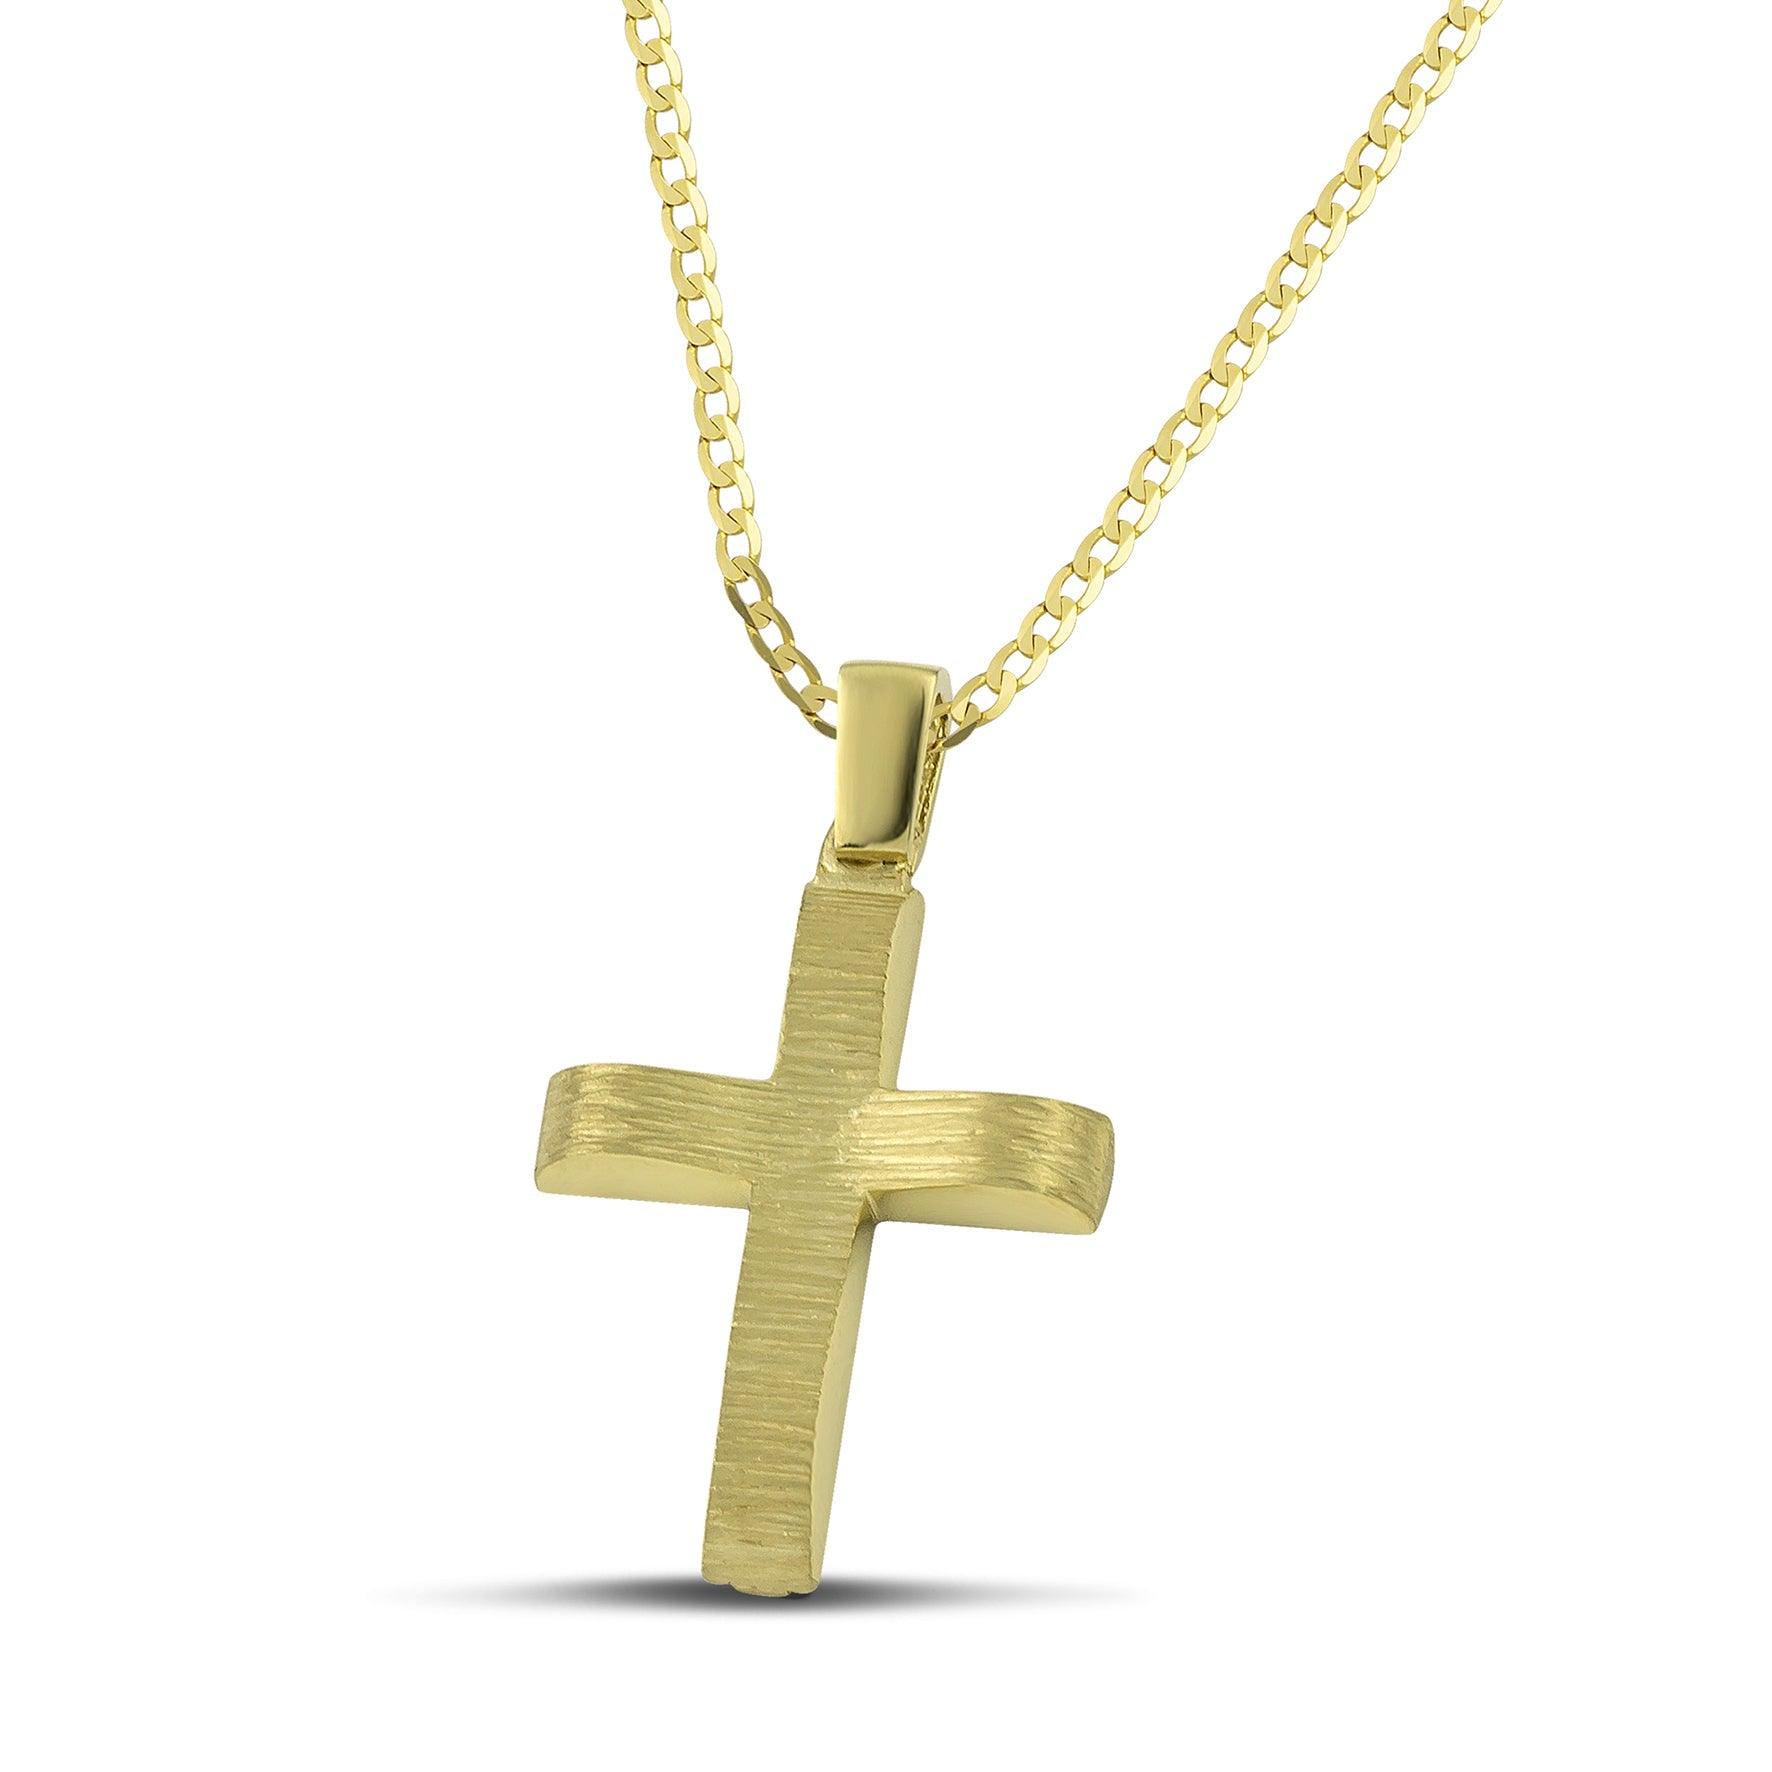 Μοντέρνος βαπτιστικός σταυρός χρυσός Κ14 για αγόρι, διπλής όψης, σαγρέ, σε κλασσική αλυσίδα. 